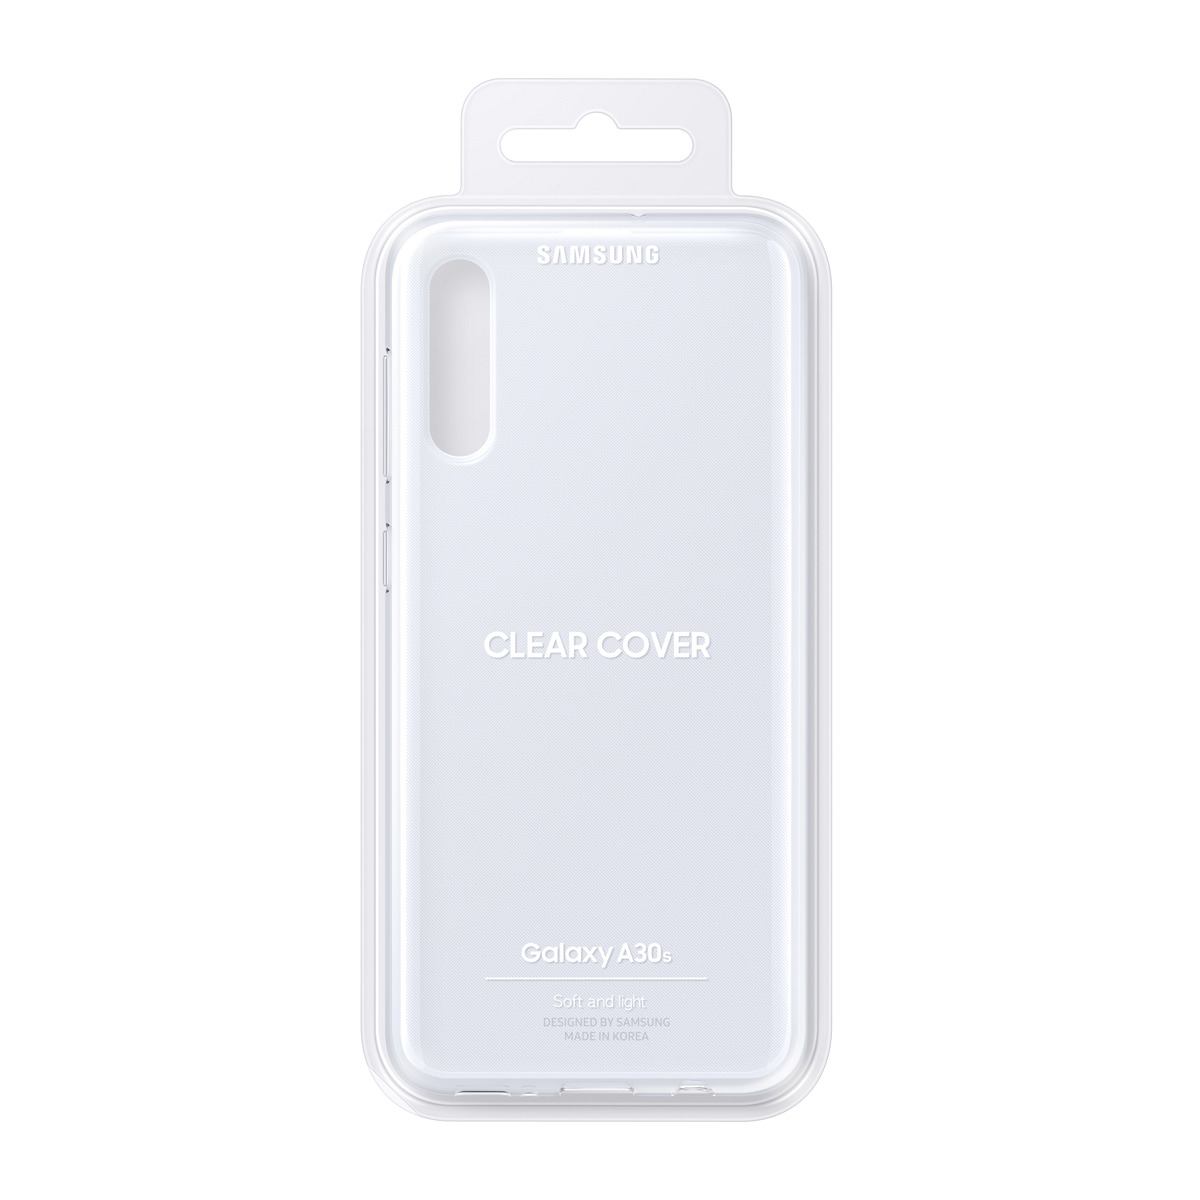 Backcover, WHITE, Weiß GALAXY Samsung, A30S SAMSUNG COVER EF-WA307PWEGWW WALLET A30s, Galaxy